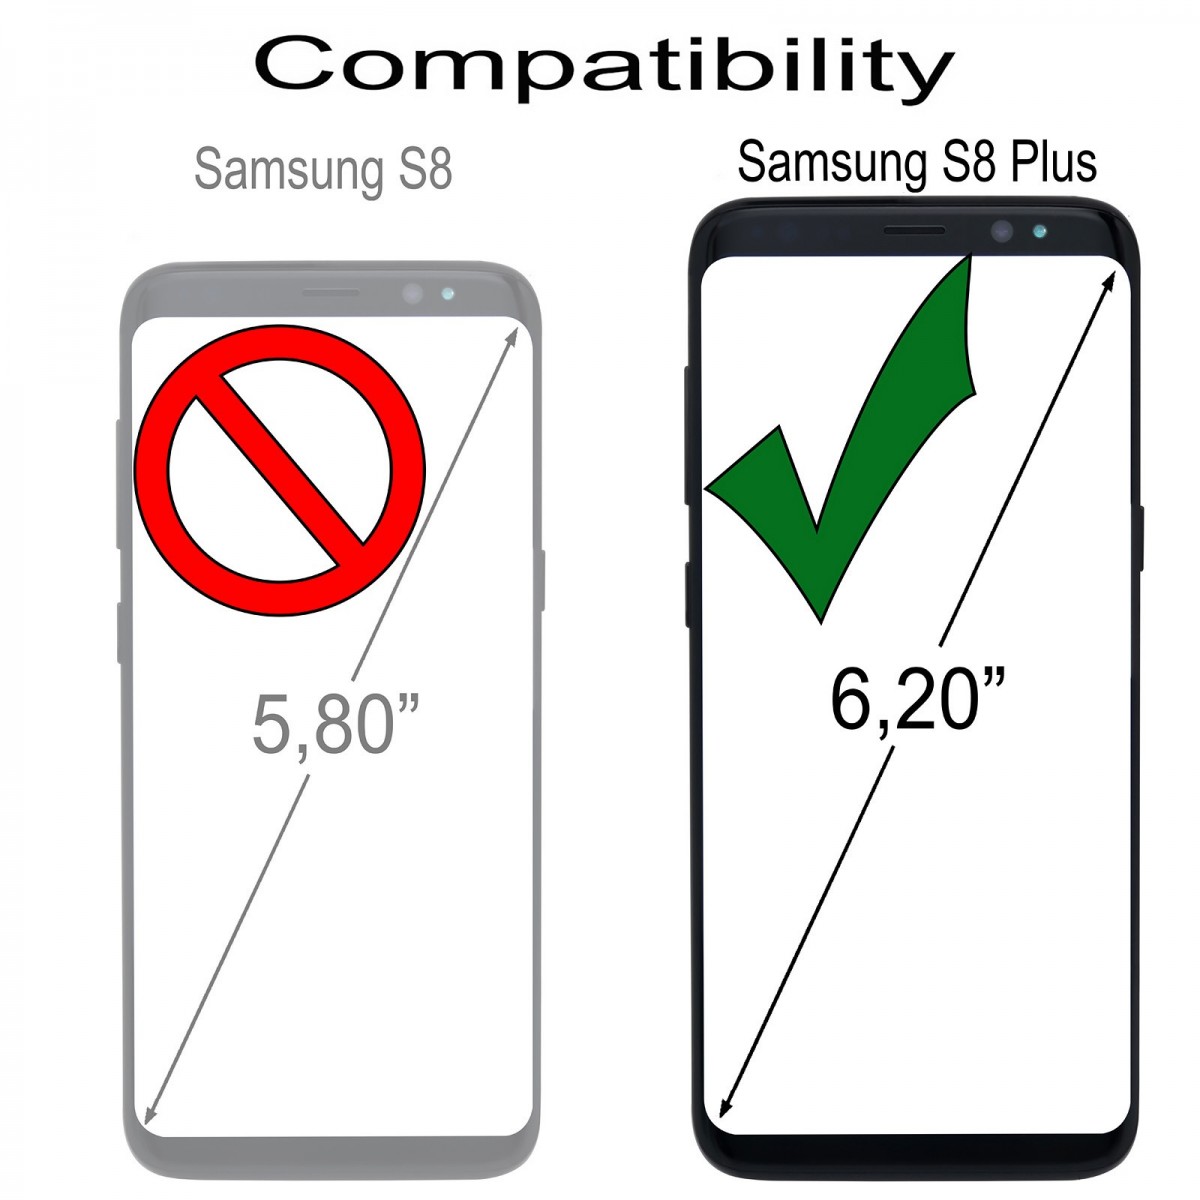 Etui Galaxy S8 Plus UltraSlim Noir en cuir véritable - Stilgut